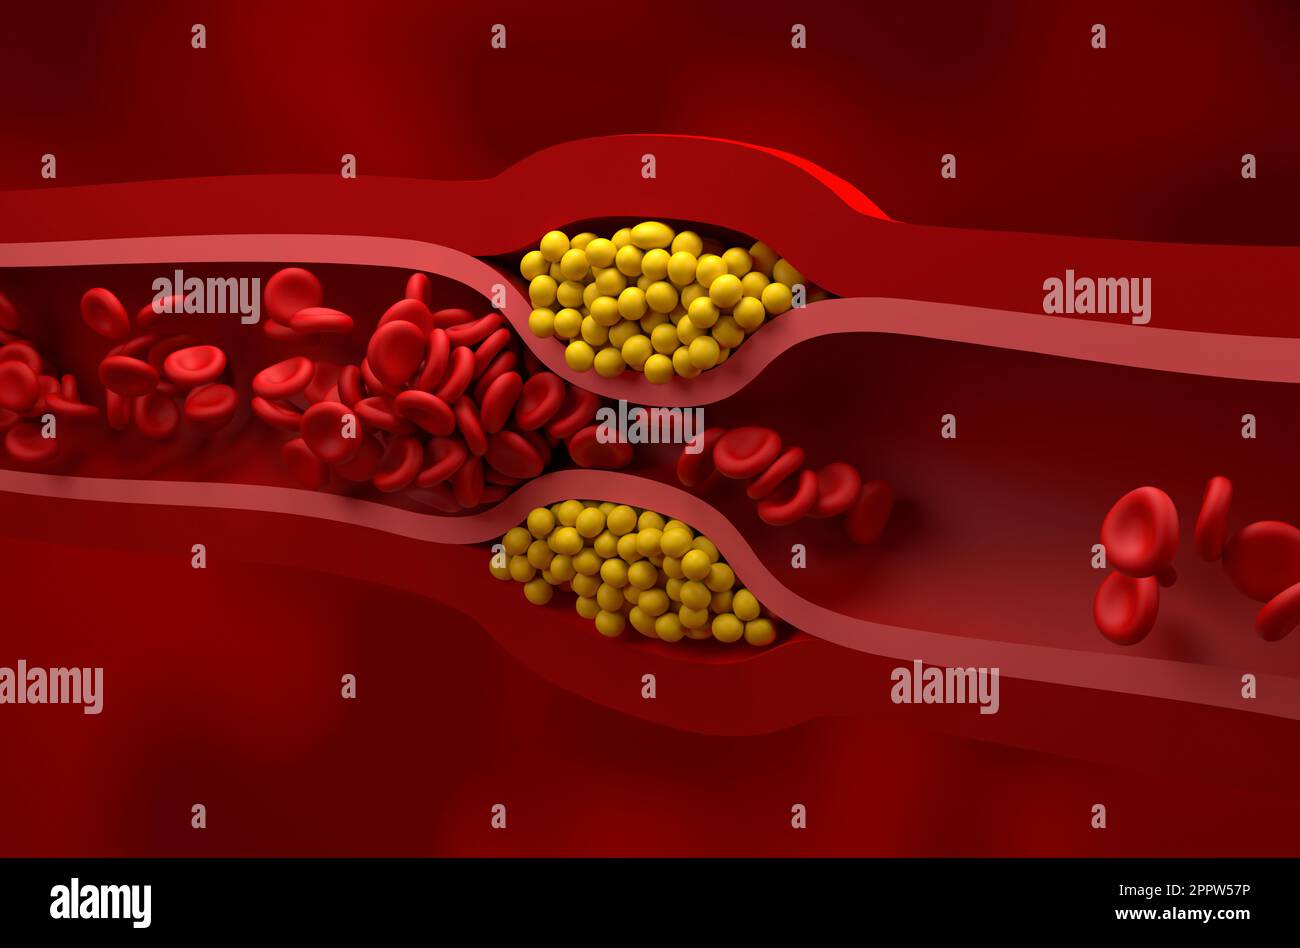 Vaso parzialmente bloccato in alto livello di LDL (colesterolo cattivo) lipoproteina - vista isometrica 3D illustrazione Foto Stock